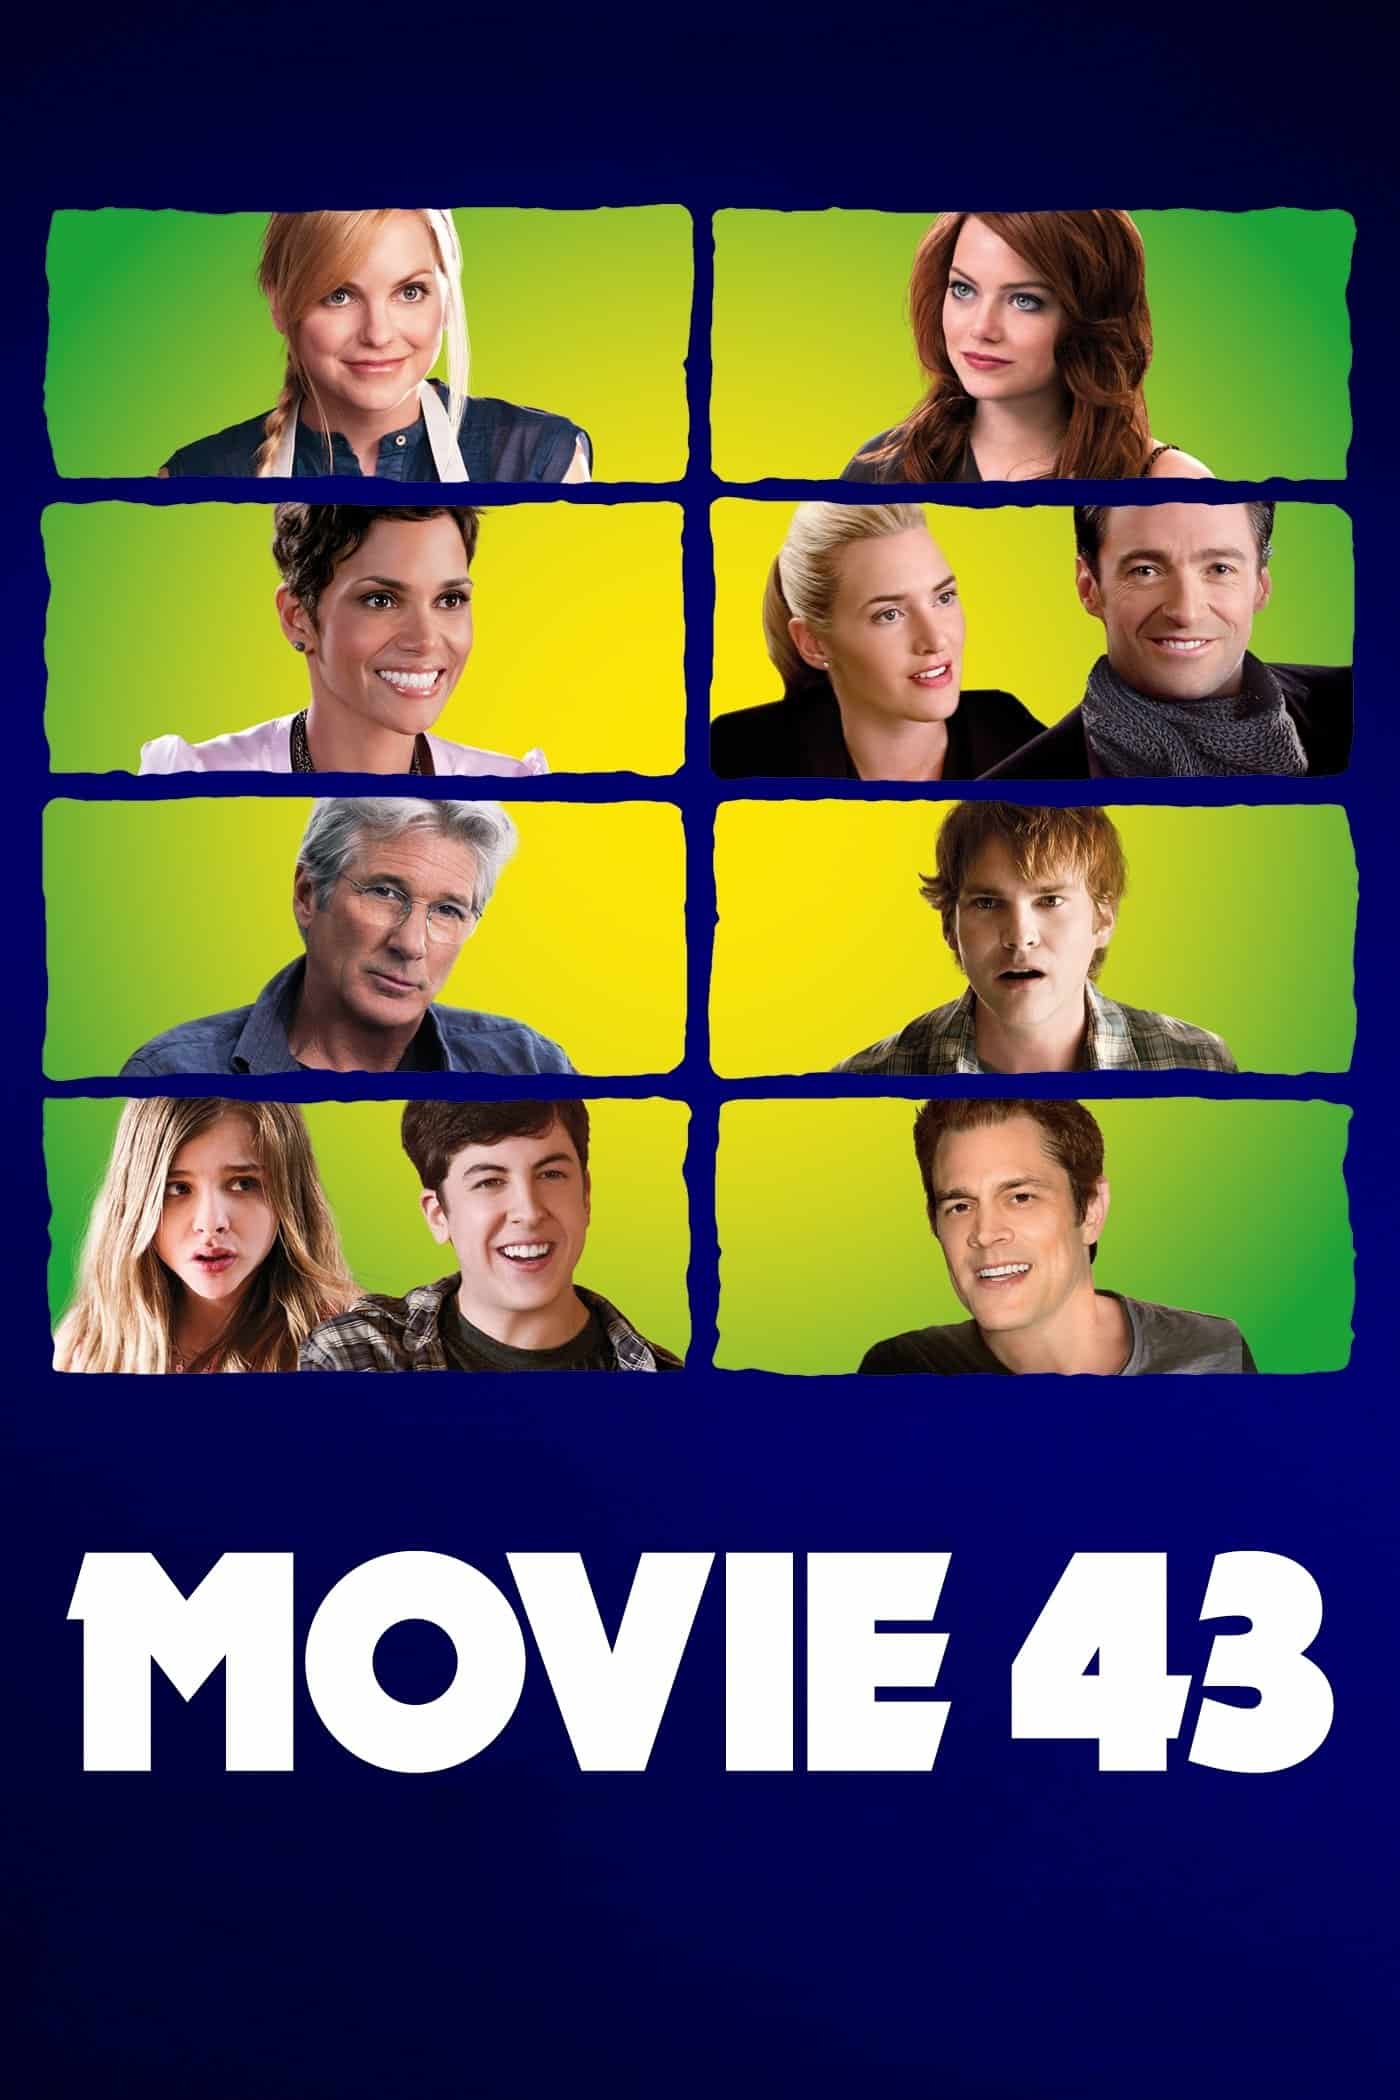 Movie 43, 2013 